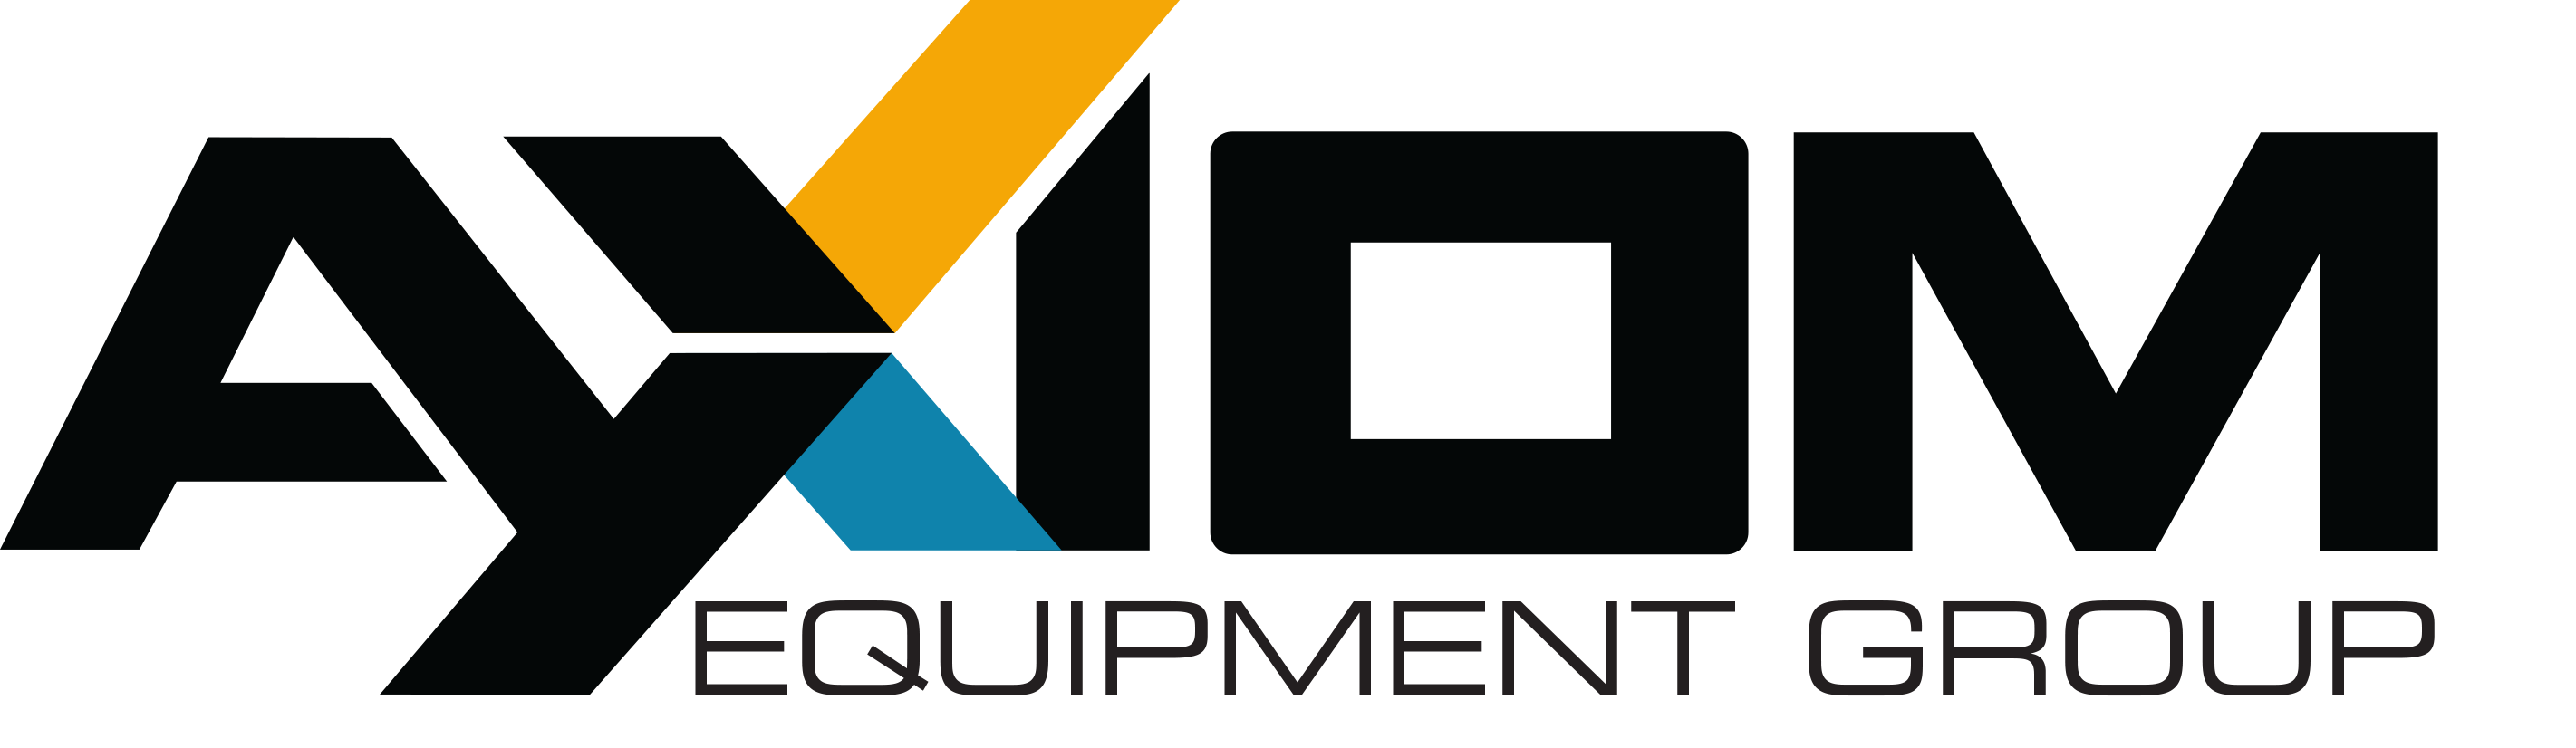 Axiom Equipment Group logo